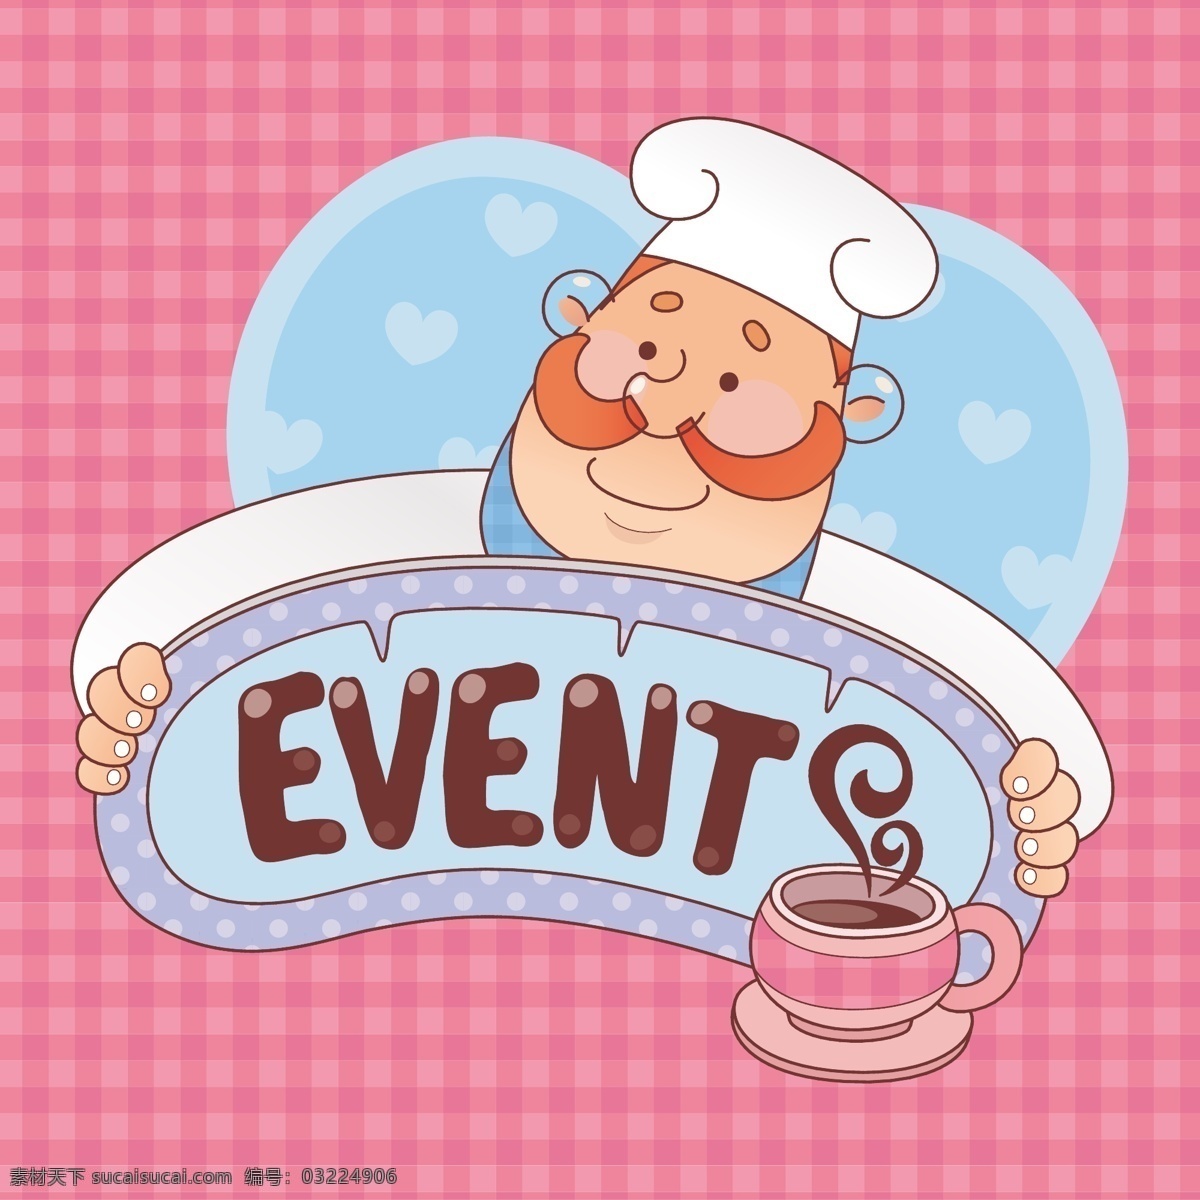 厨师 糕点 师傅 形象 卡通 厨师卡通形象 糕点师傅卡通 面包师形象 厨房卡通素材 卡通咖啡师 卡通设计